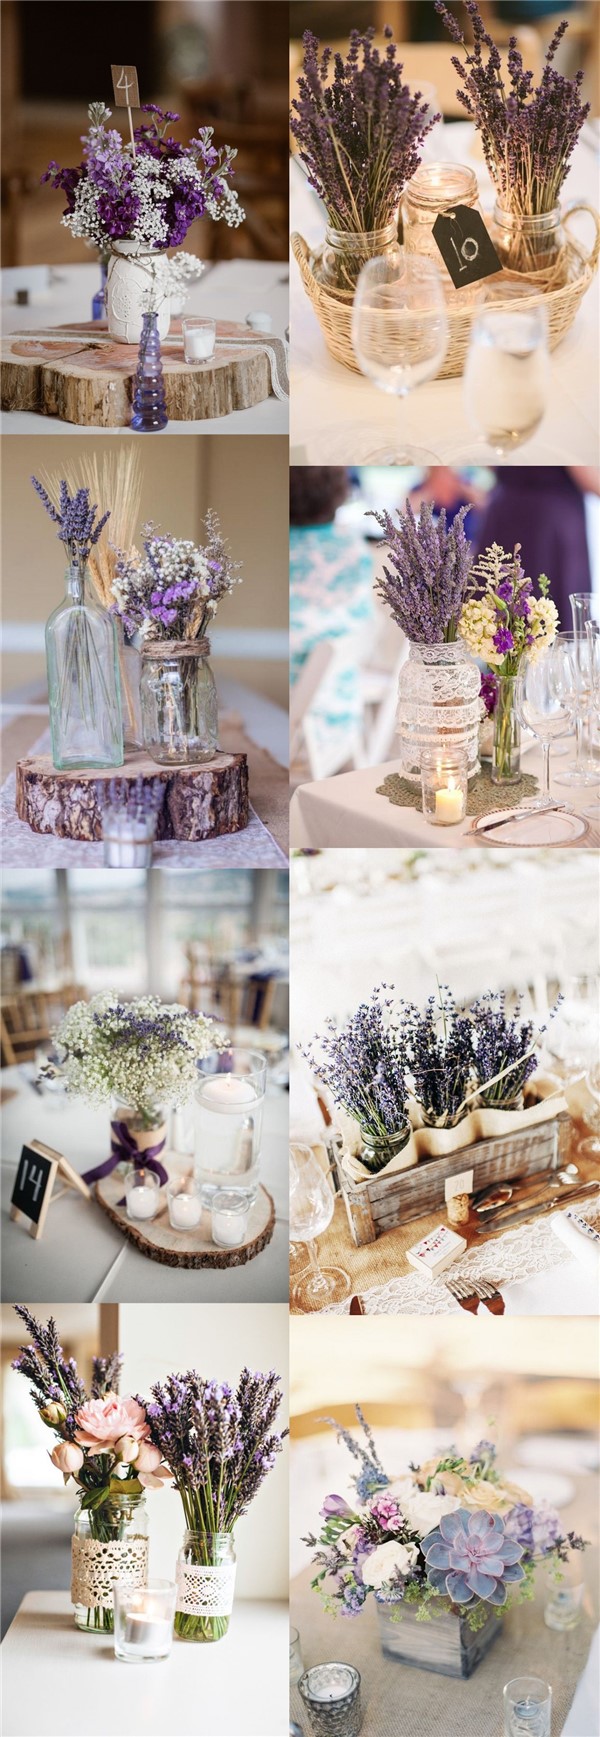 rustic lavender wedding centerpieces